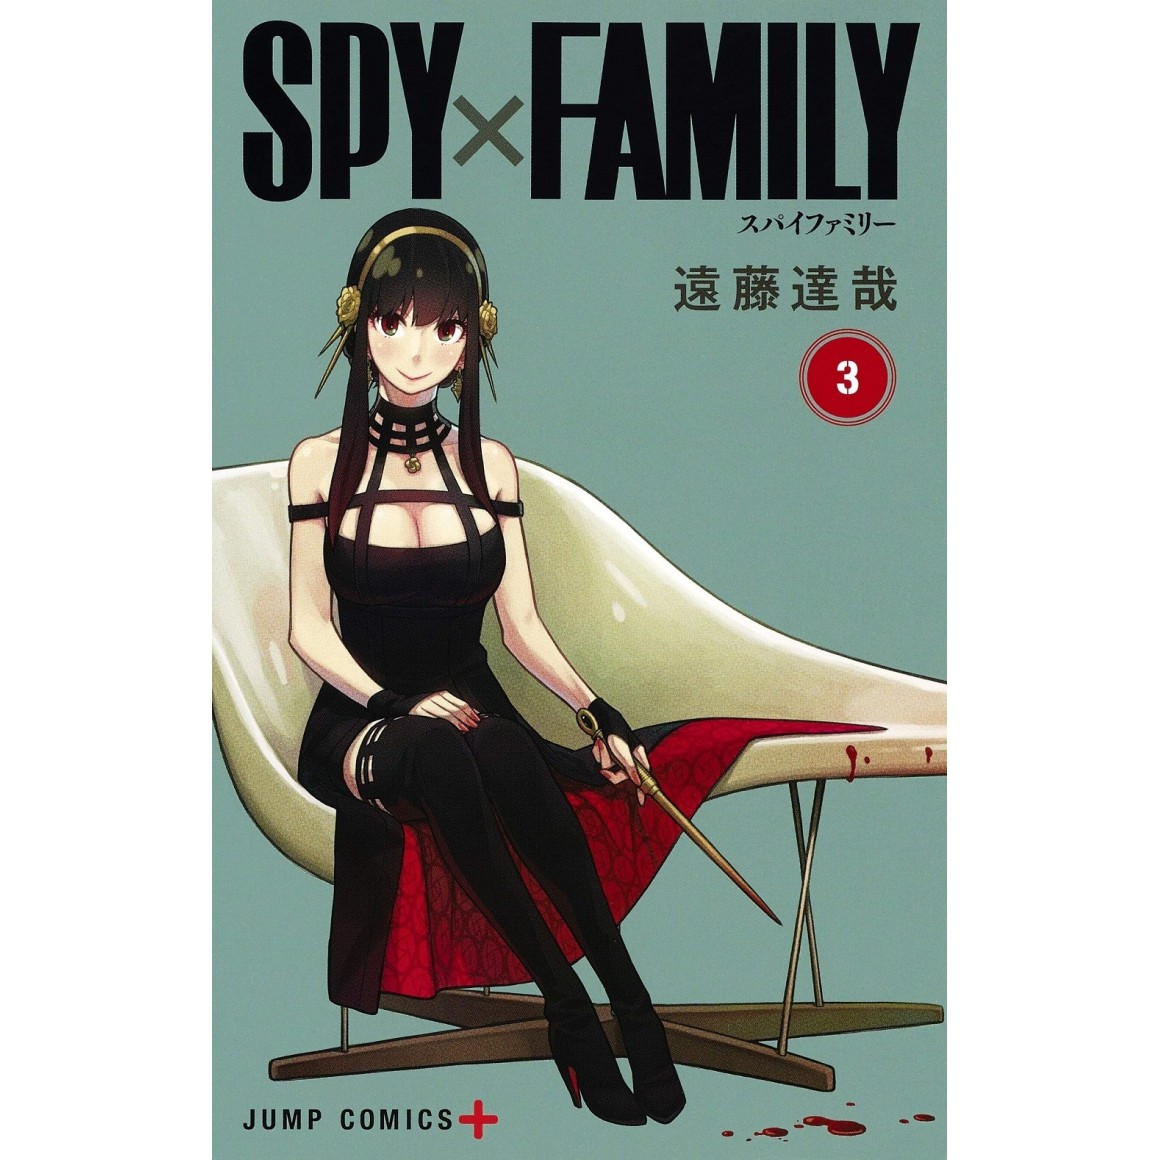 Spy x Family – A maior das missões